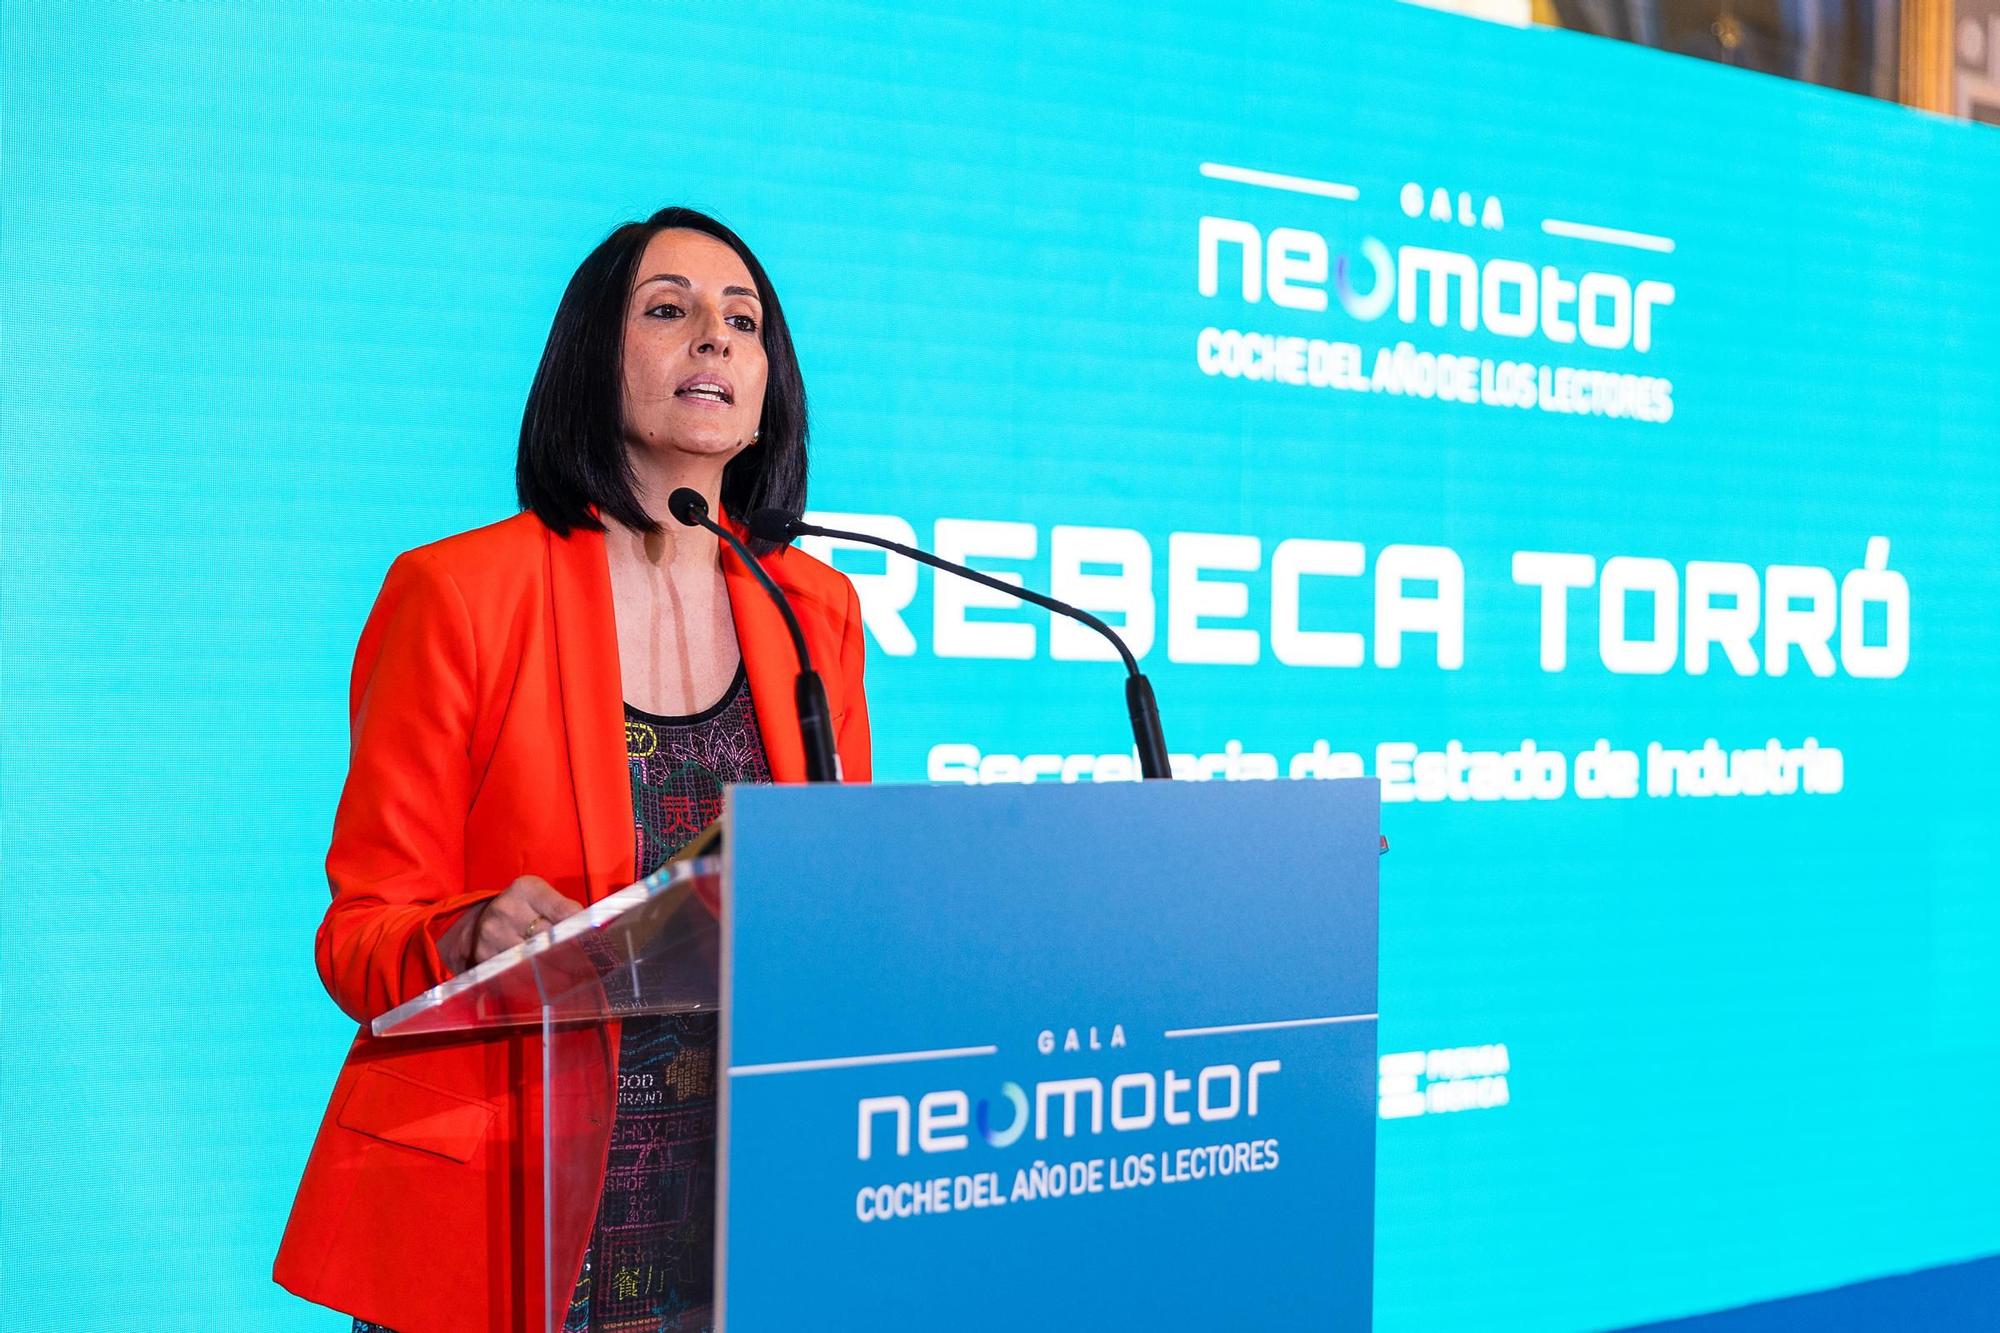 La Gala Neomotor de Prensa Ibérica, en imágenes